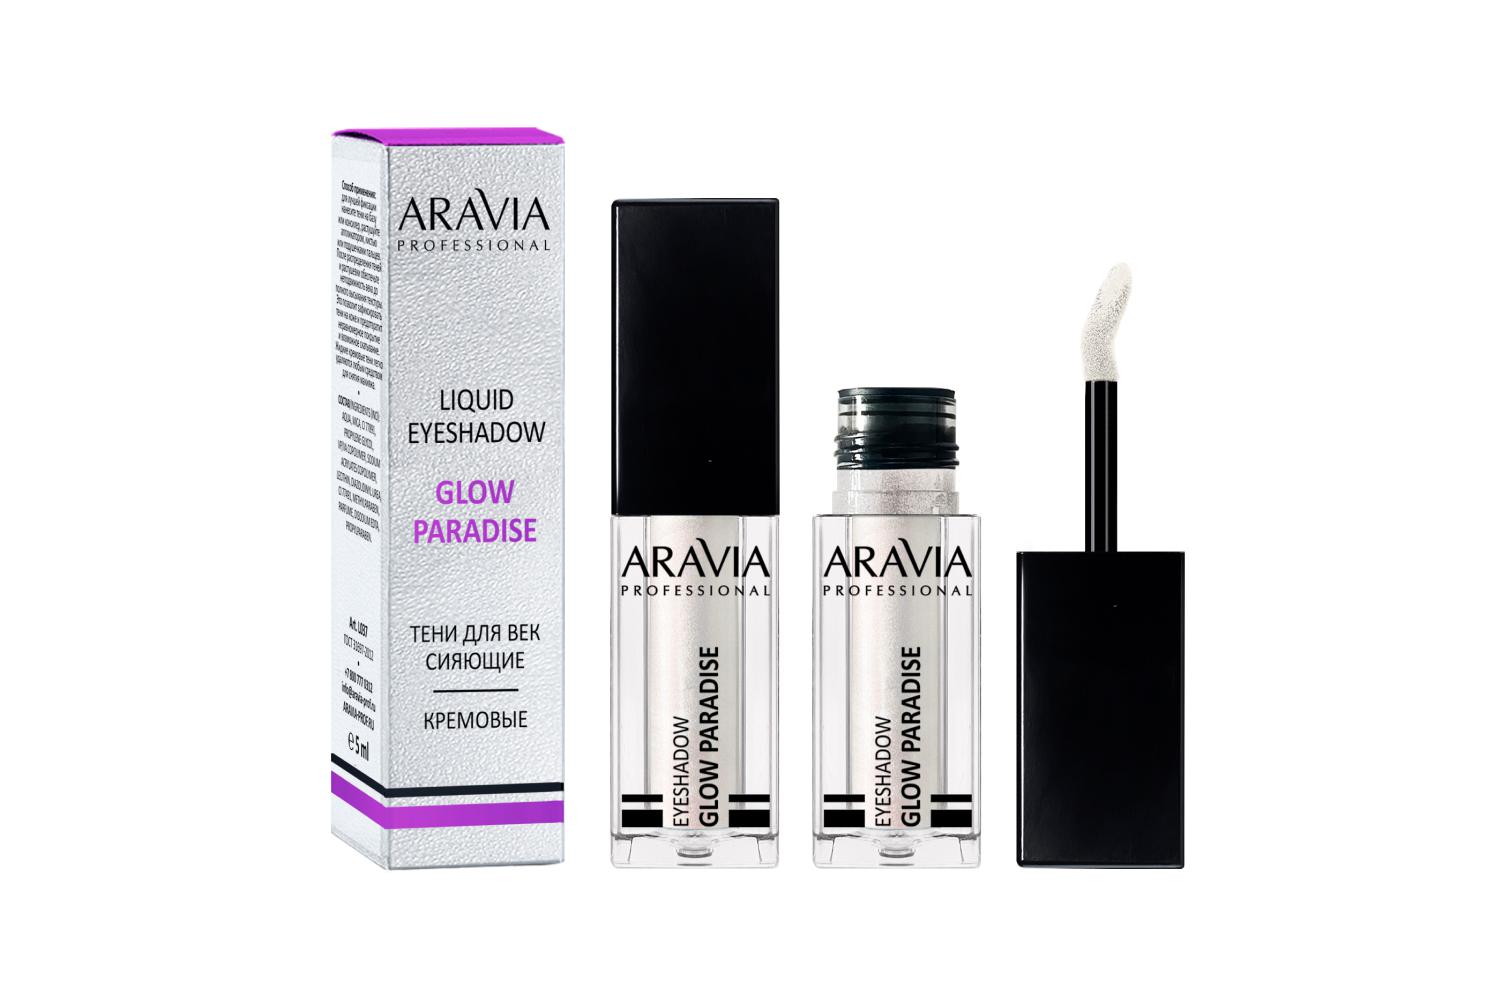 Жидкие сияющие тени для век Glow Paradise, Aravia Professional, оттенок жемчужный, Aravia, 500 руб. (aravia.ru)